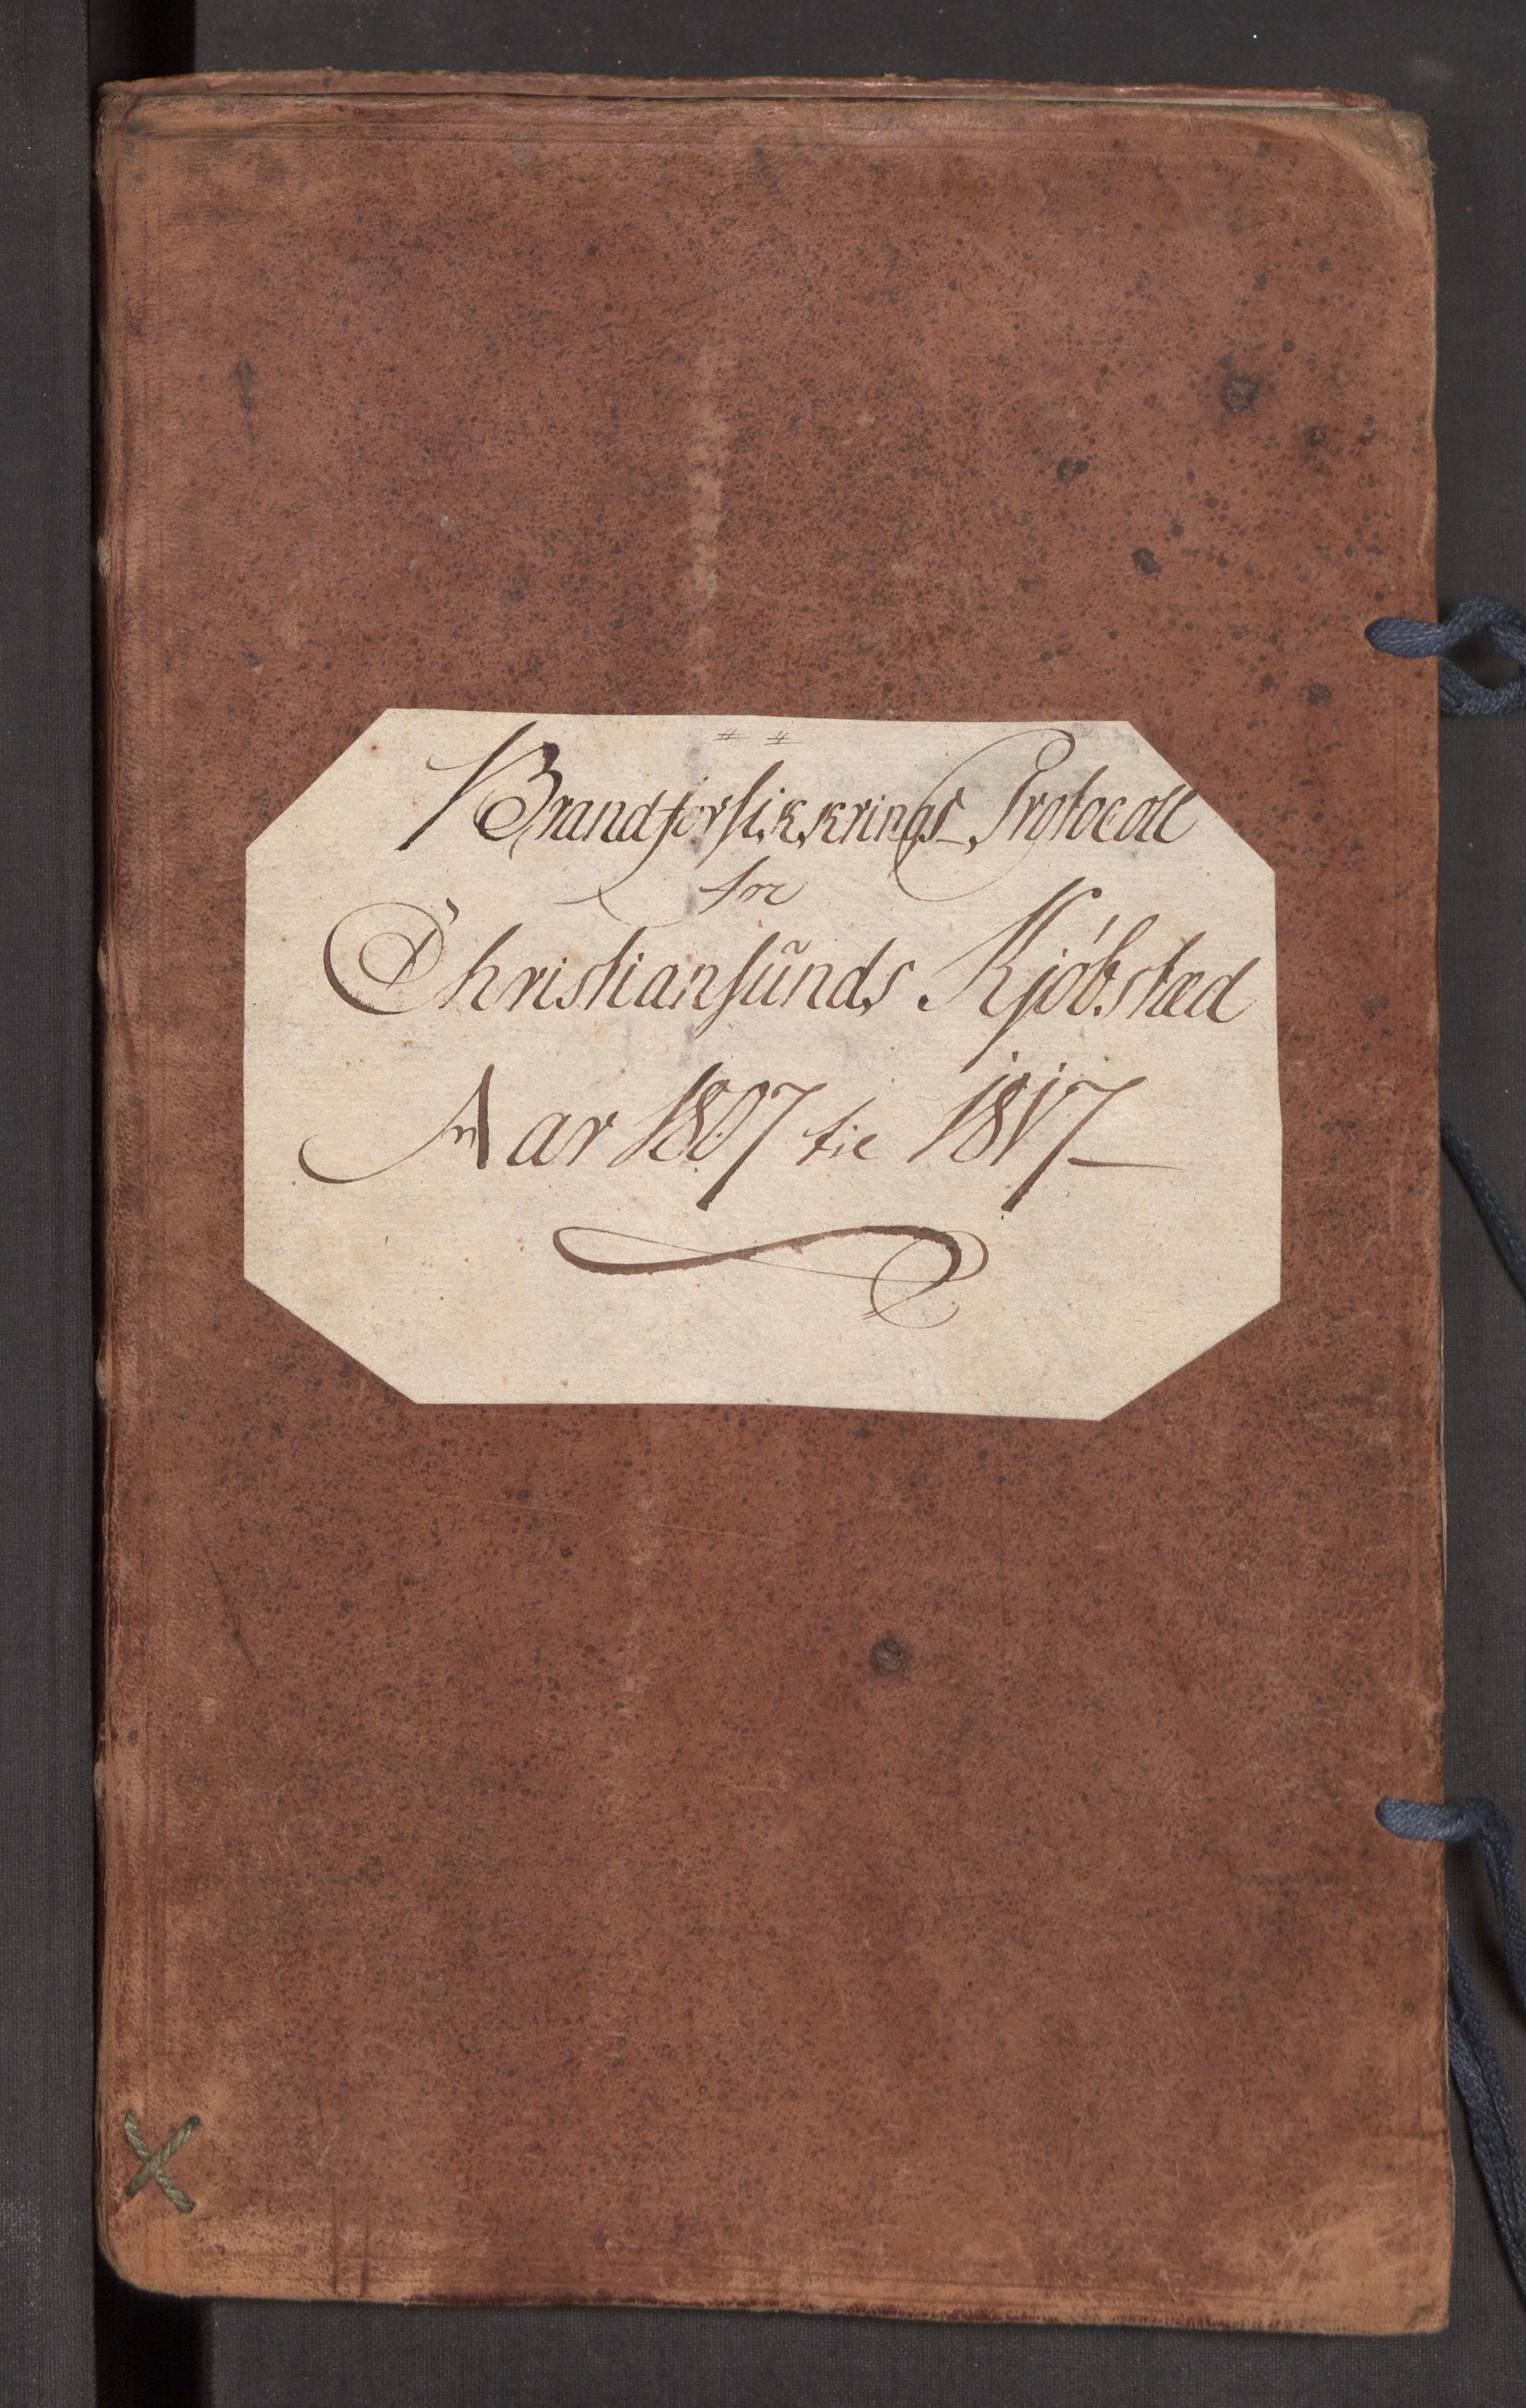 Kommersekollegiet, Brannforsikringskontoret 1767-1814, RA/EA-5458/F/Fa/L0022/0001: Kristiansund / Branntakstprotokoll, 1807-1817